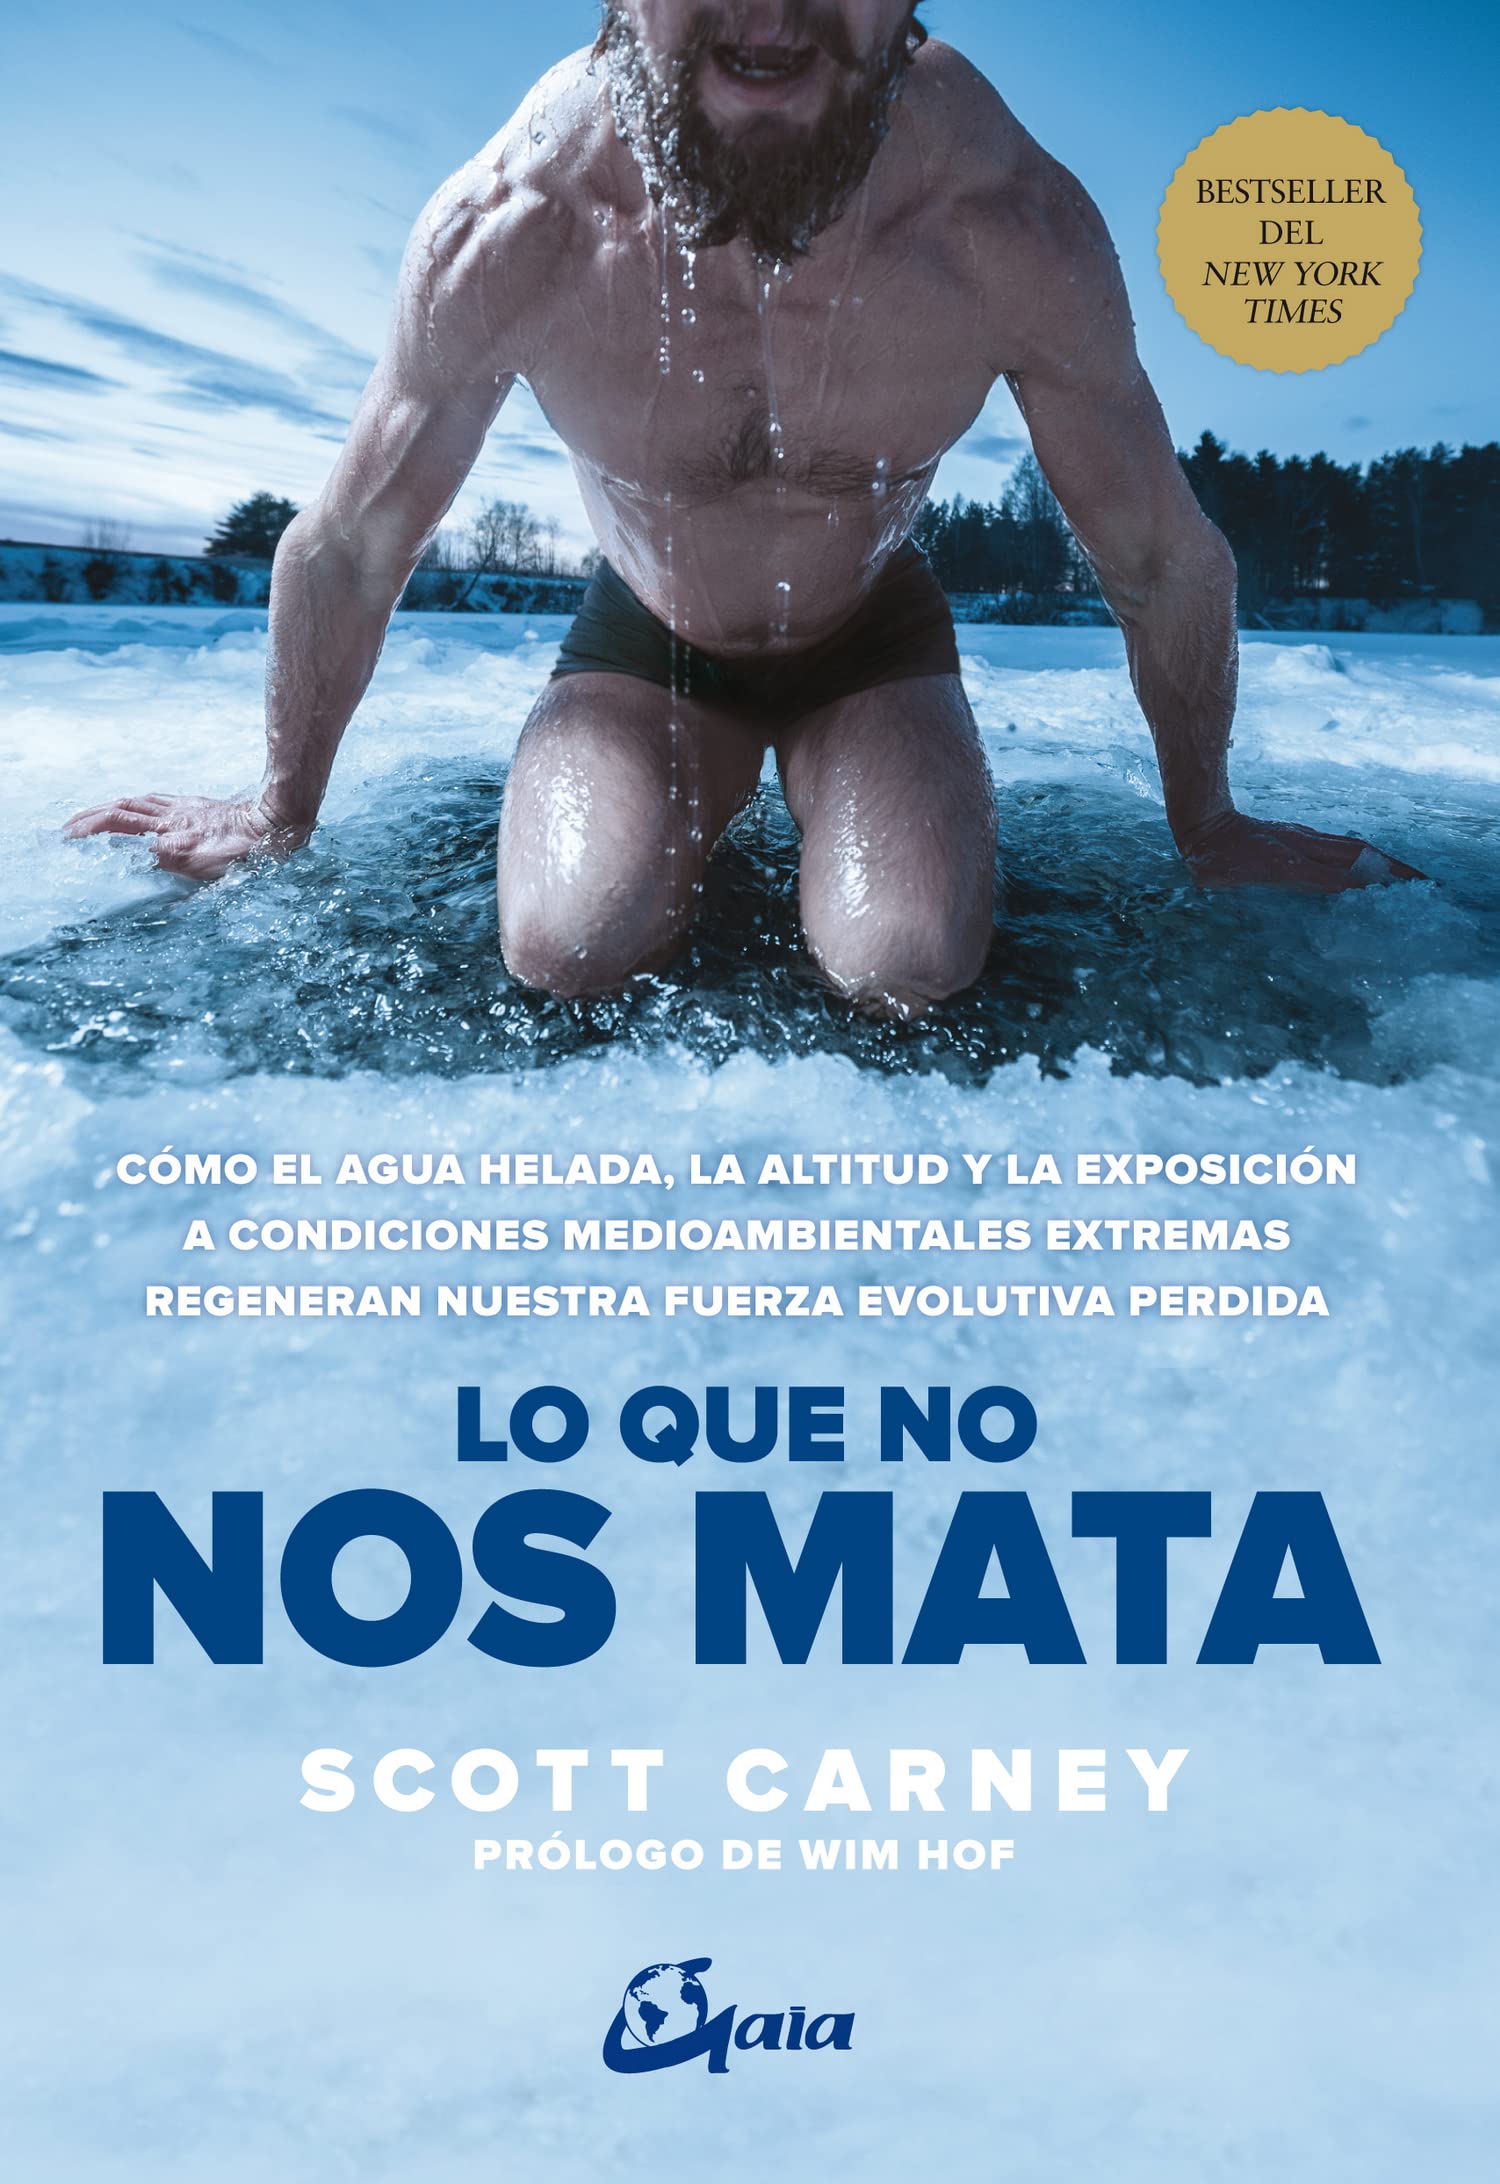 Libro: Lo que no nos mata por Scott Carney